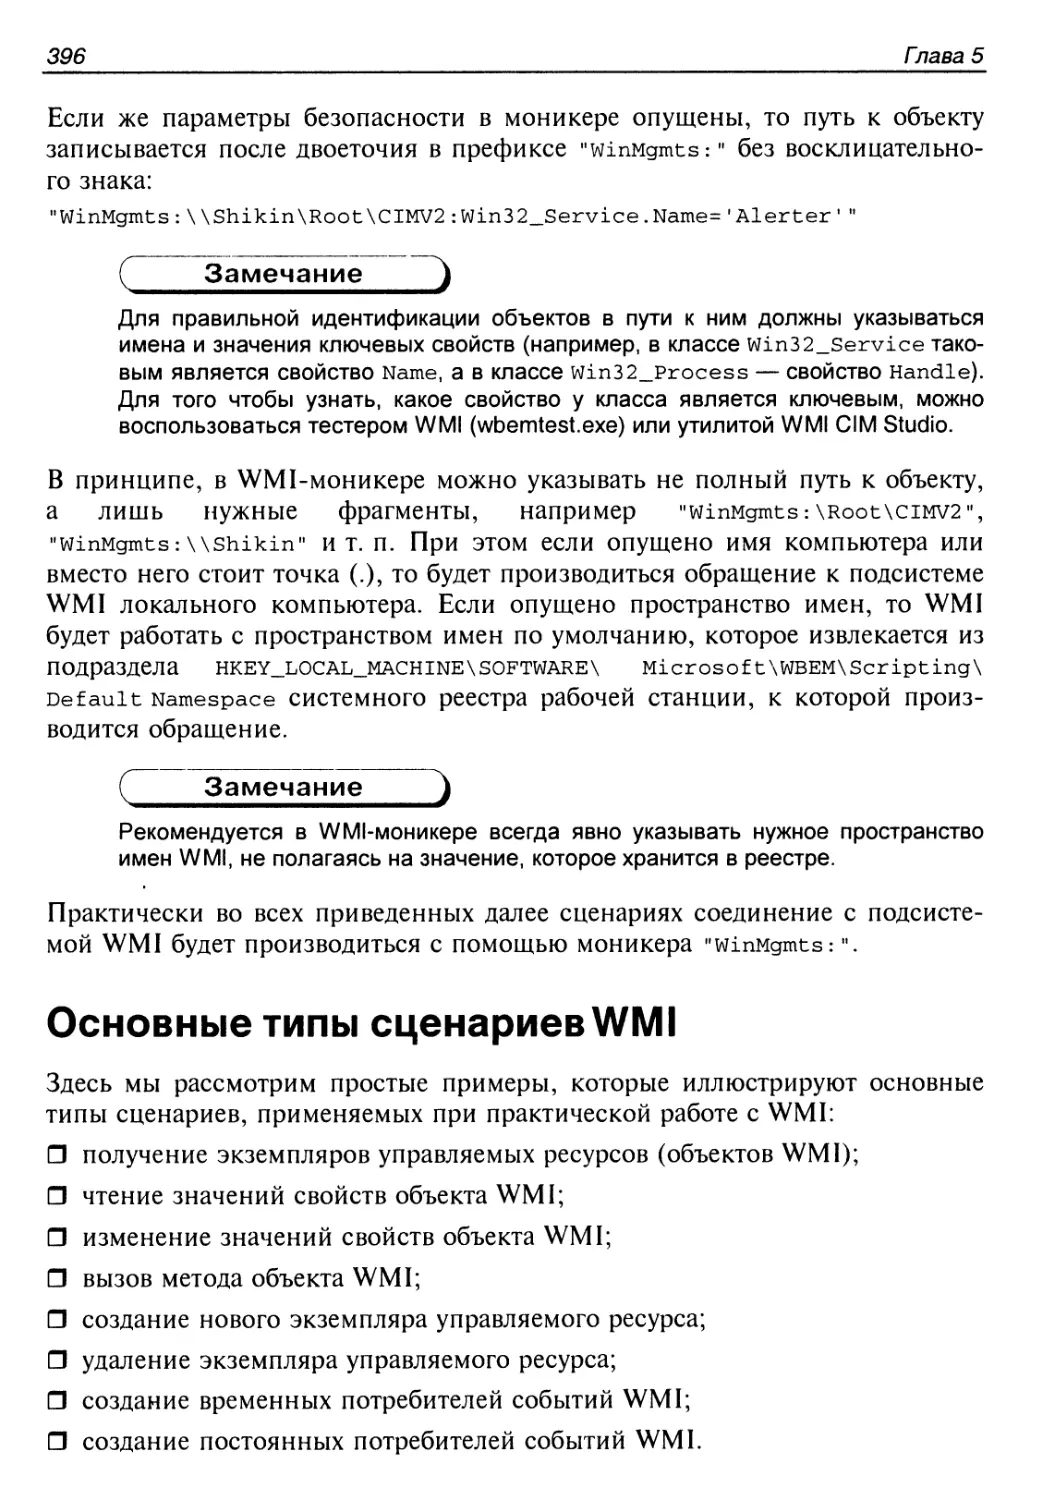 Основные типы сценариев WMI